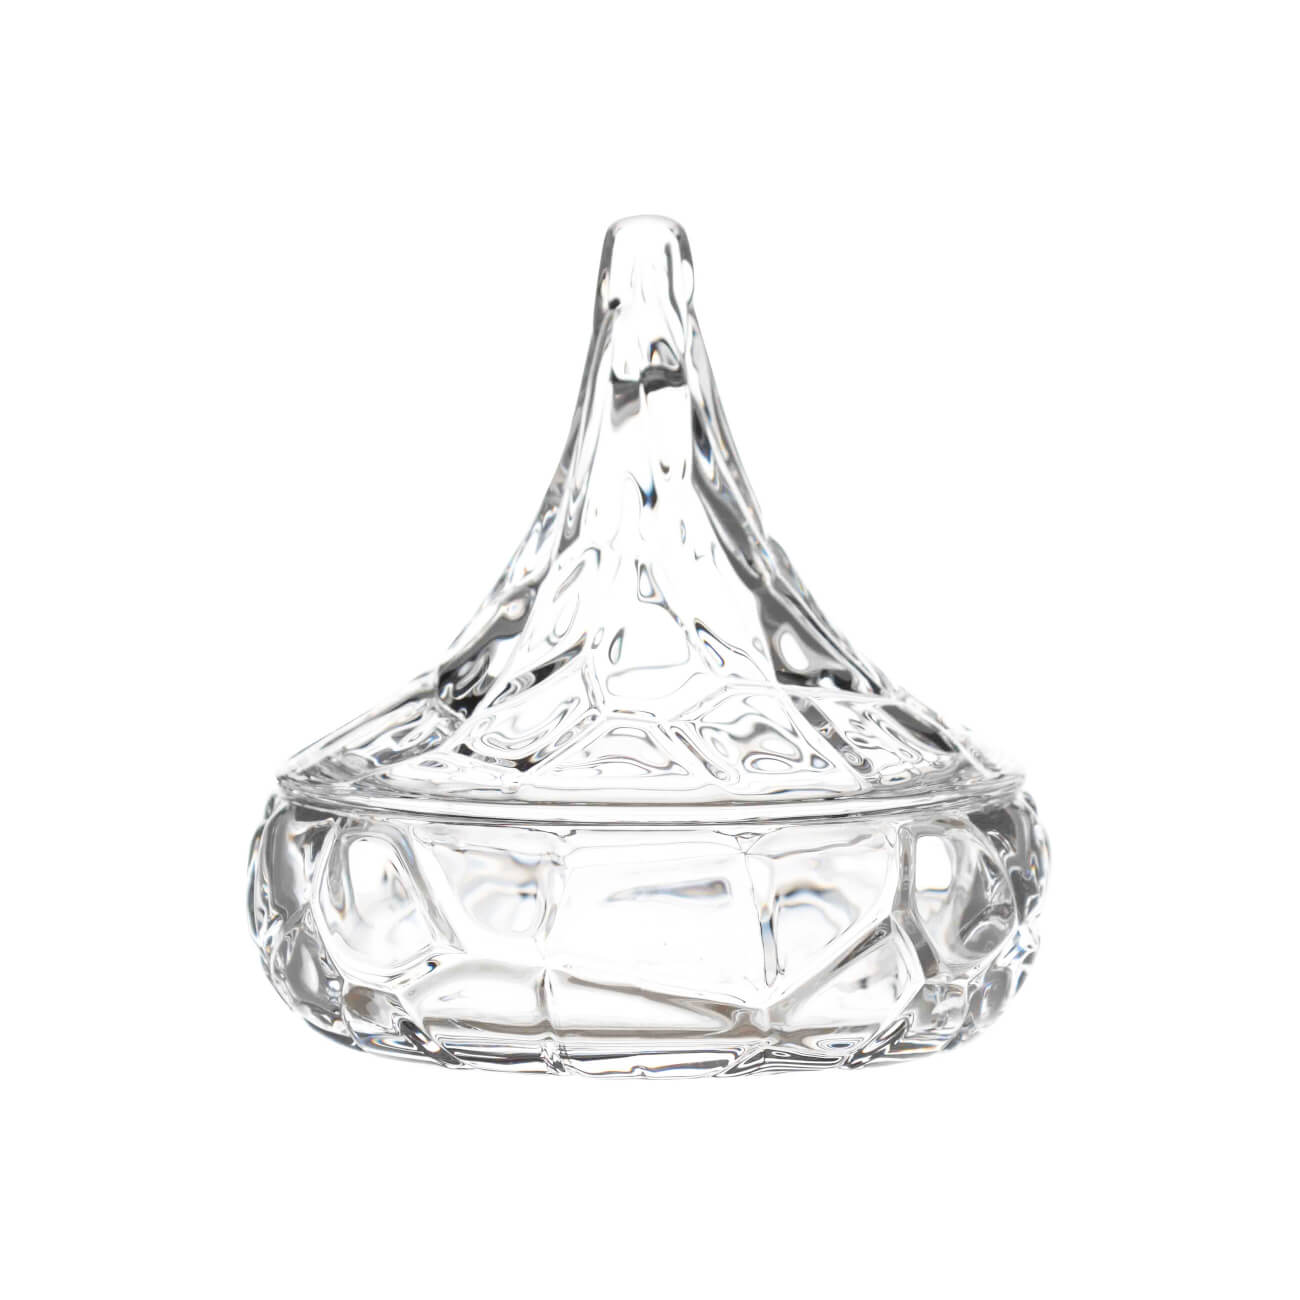 конфетница rogaska crown jewel 19 см с крышкой 273897 Конфетница, 13х13 см, 180 мл, с крышкой, стекло Р, Узорная капля, Wippy